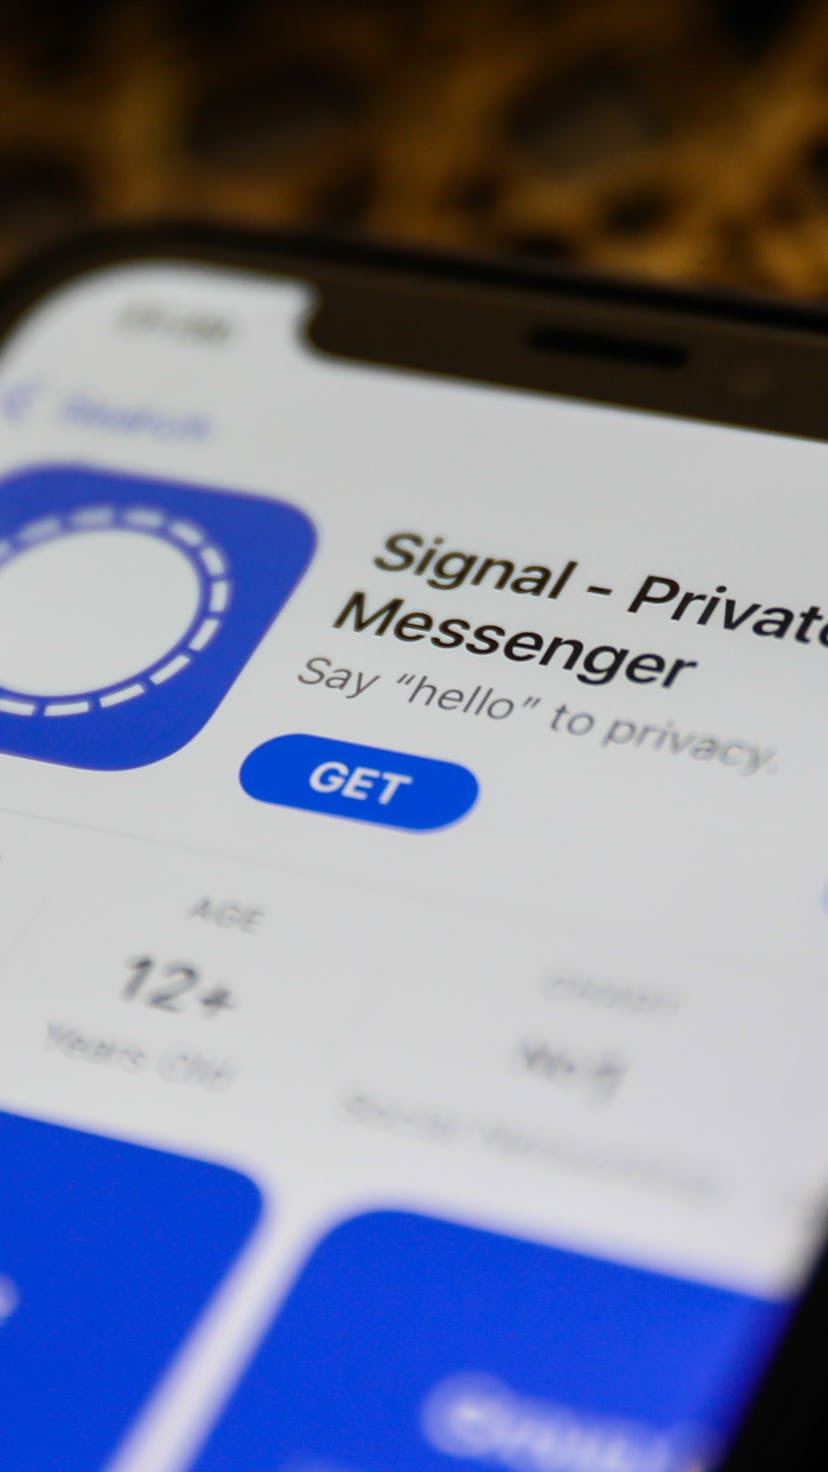 Facebook's Secret Conversations feature enables end-to-end encryption.